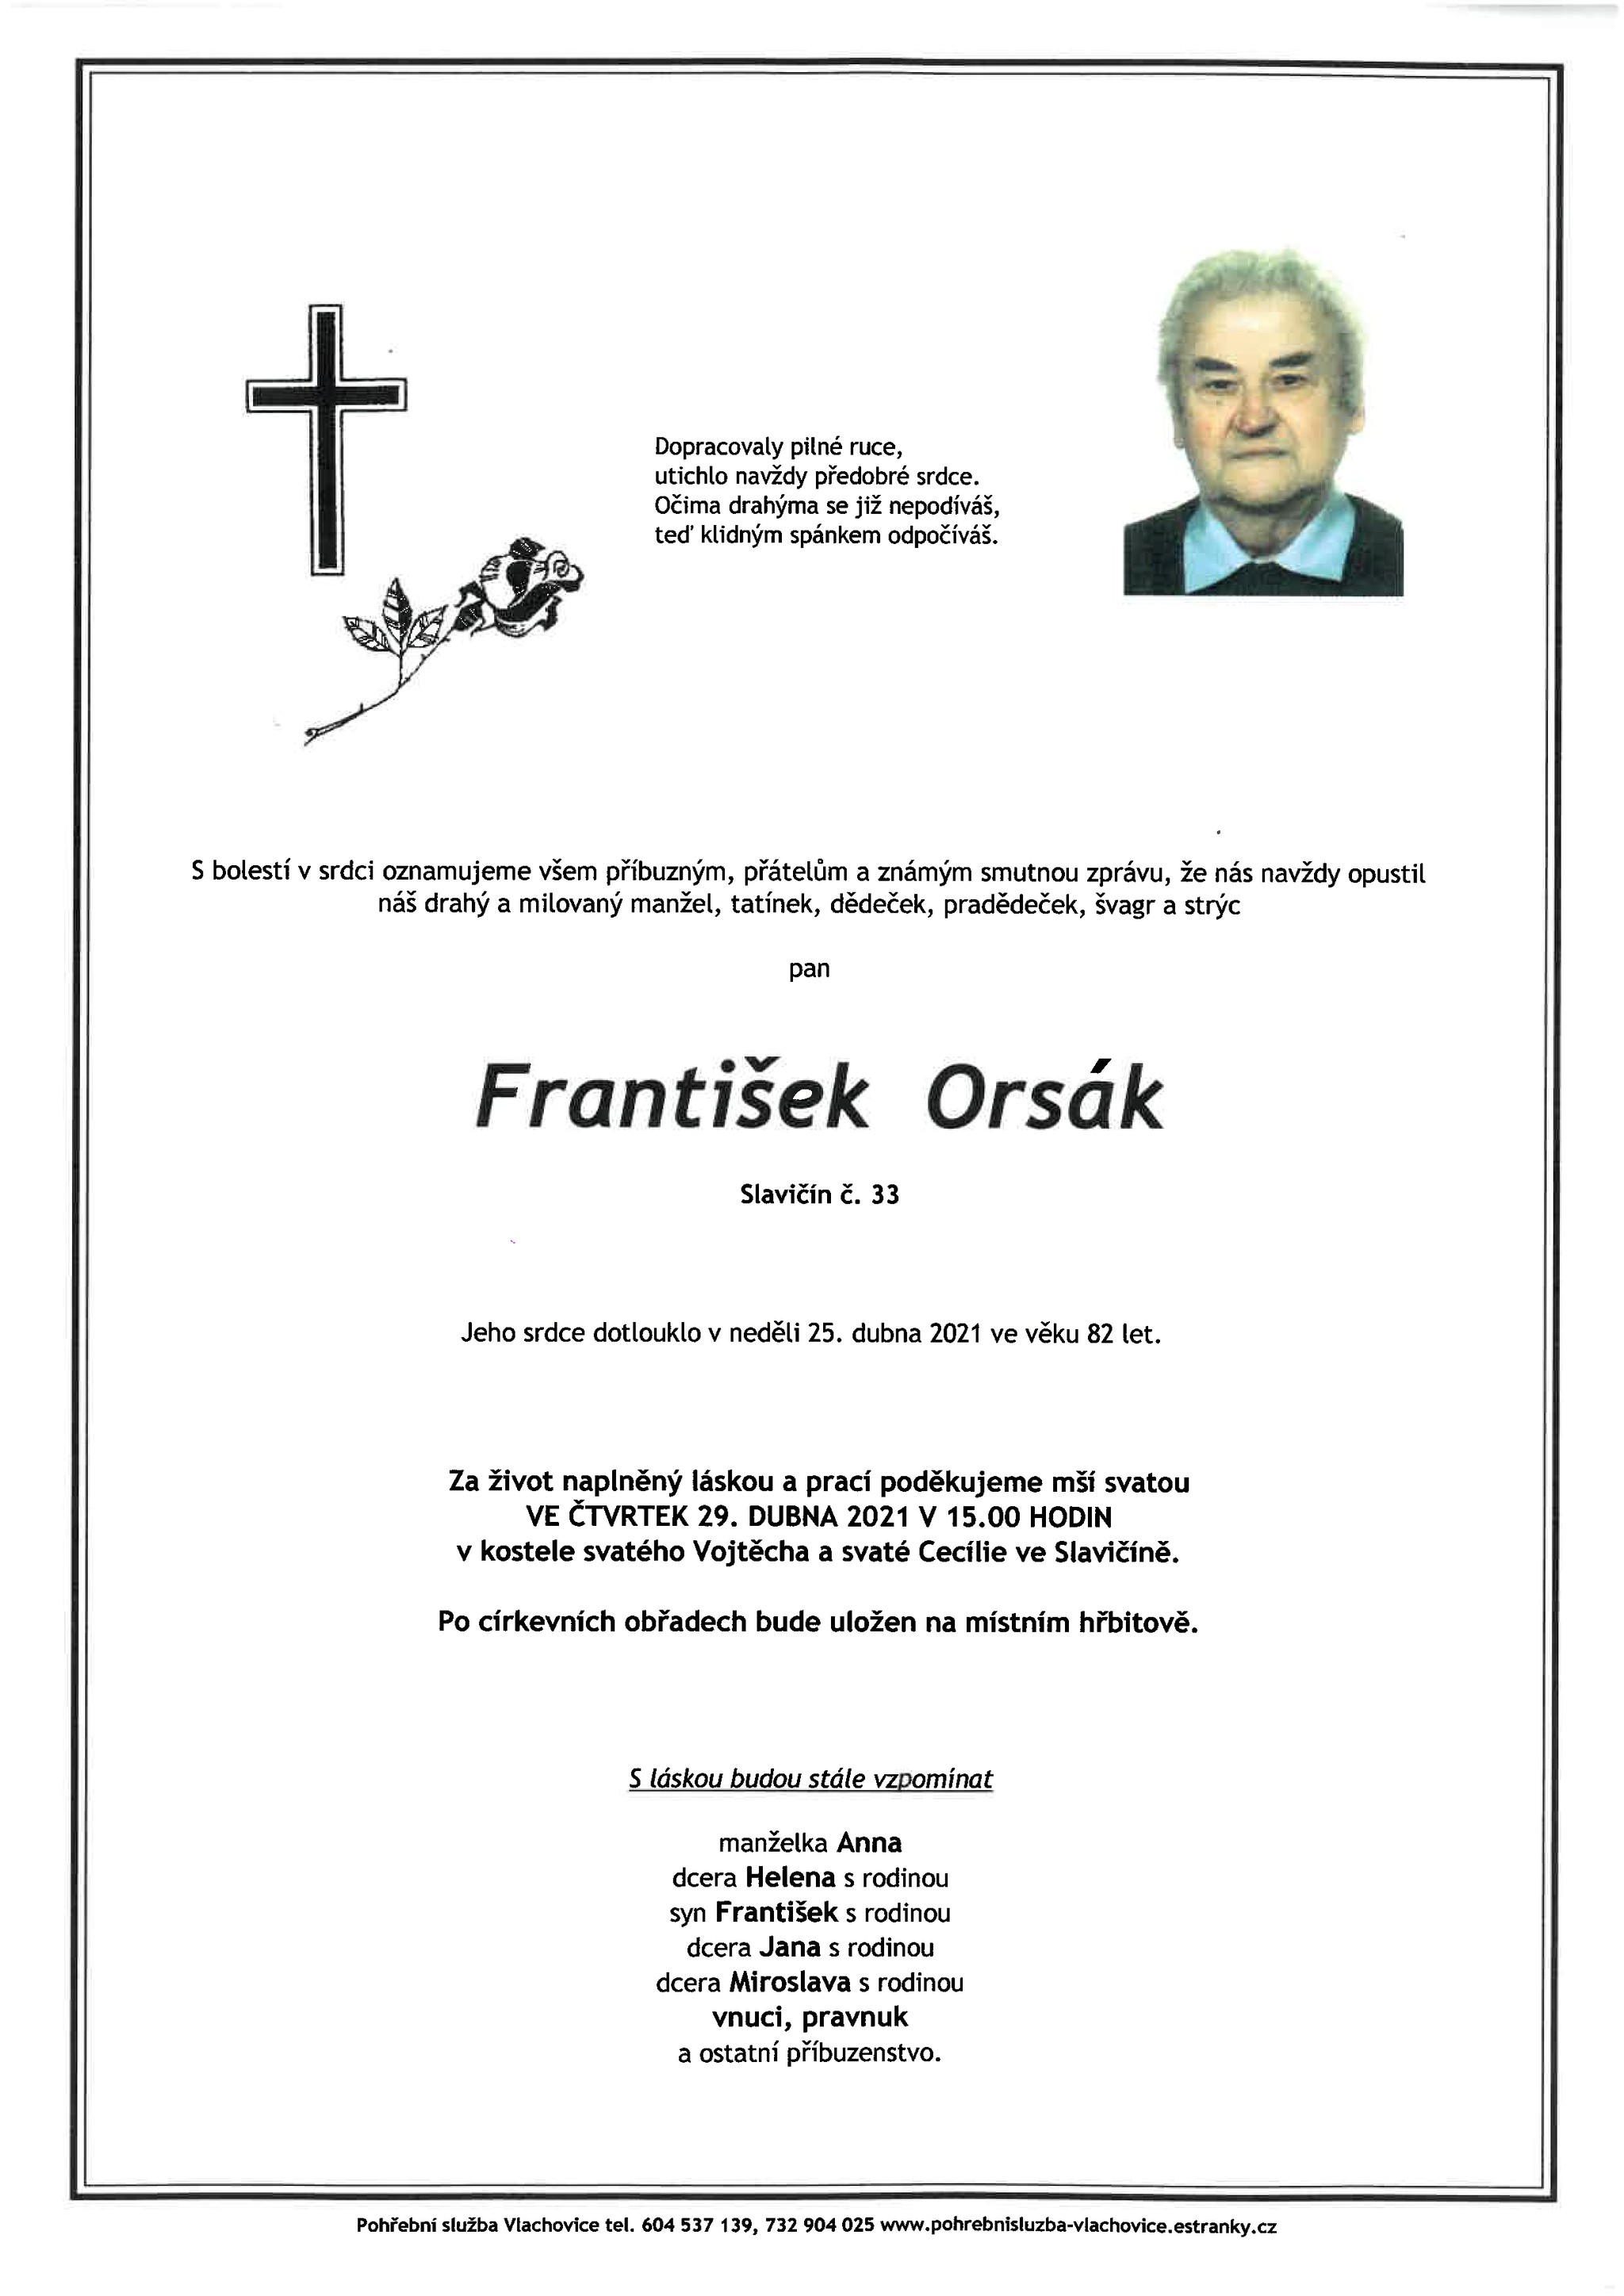 František Orsák